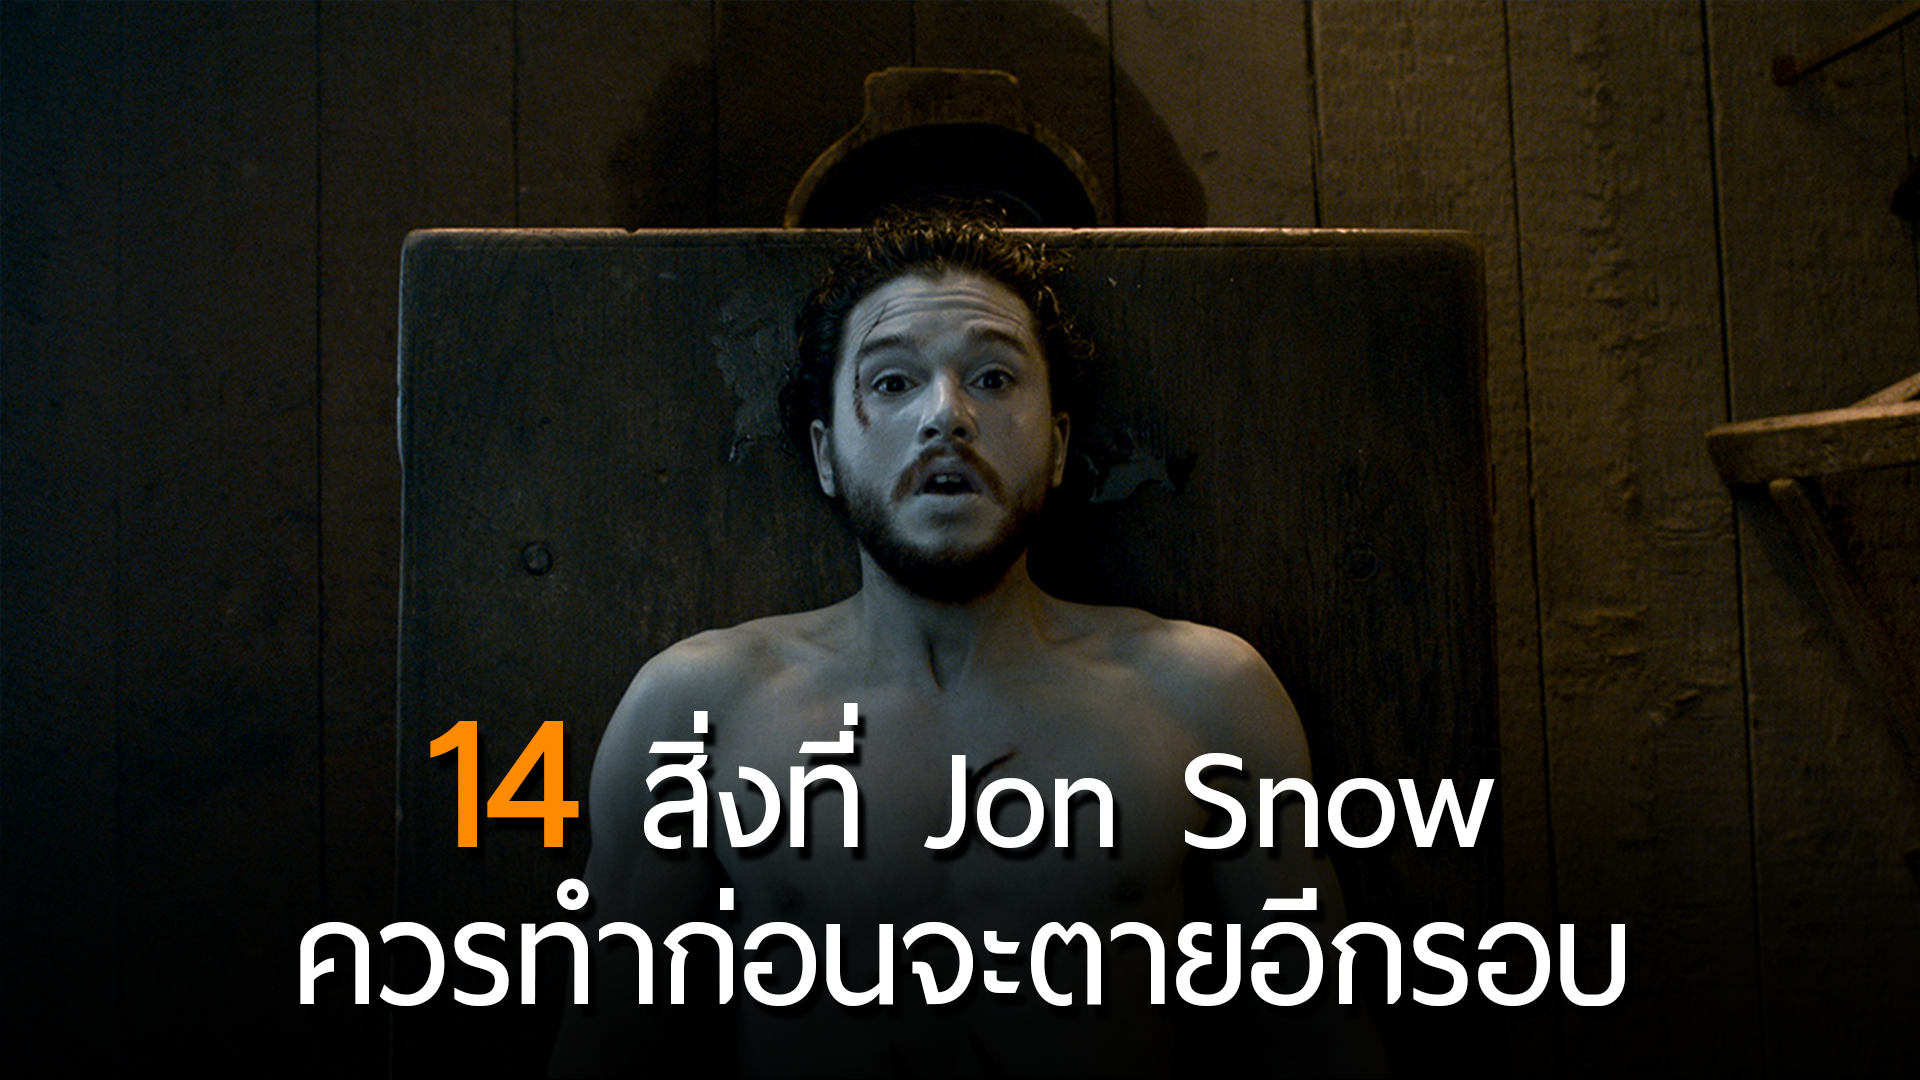 เพราะชีวิตไม่ใช่เรื่องแน่นอน…นี่คือ 14 สิ่งที่ Jon Snow ควรทำ ถ้าหากจะต้องตายอีกรอบ